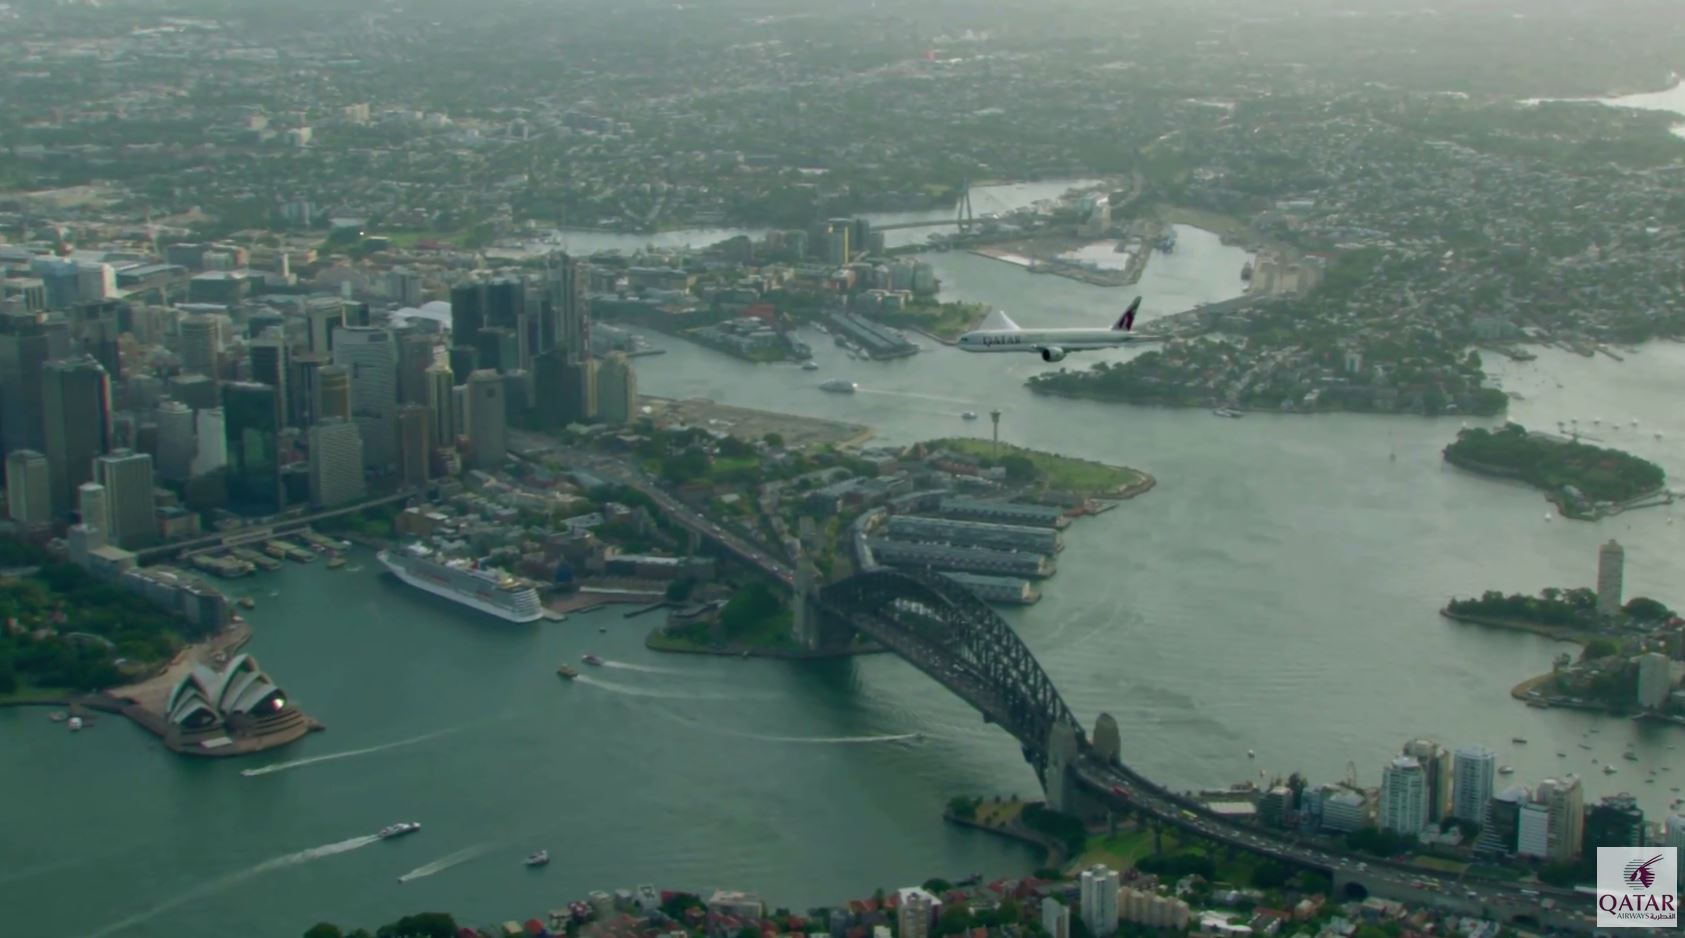 Qatar Airways Inaugural Flight to Sydney